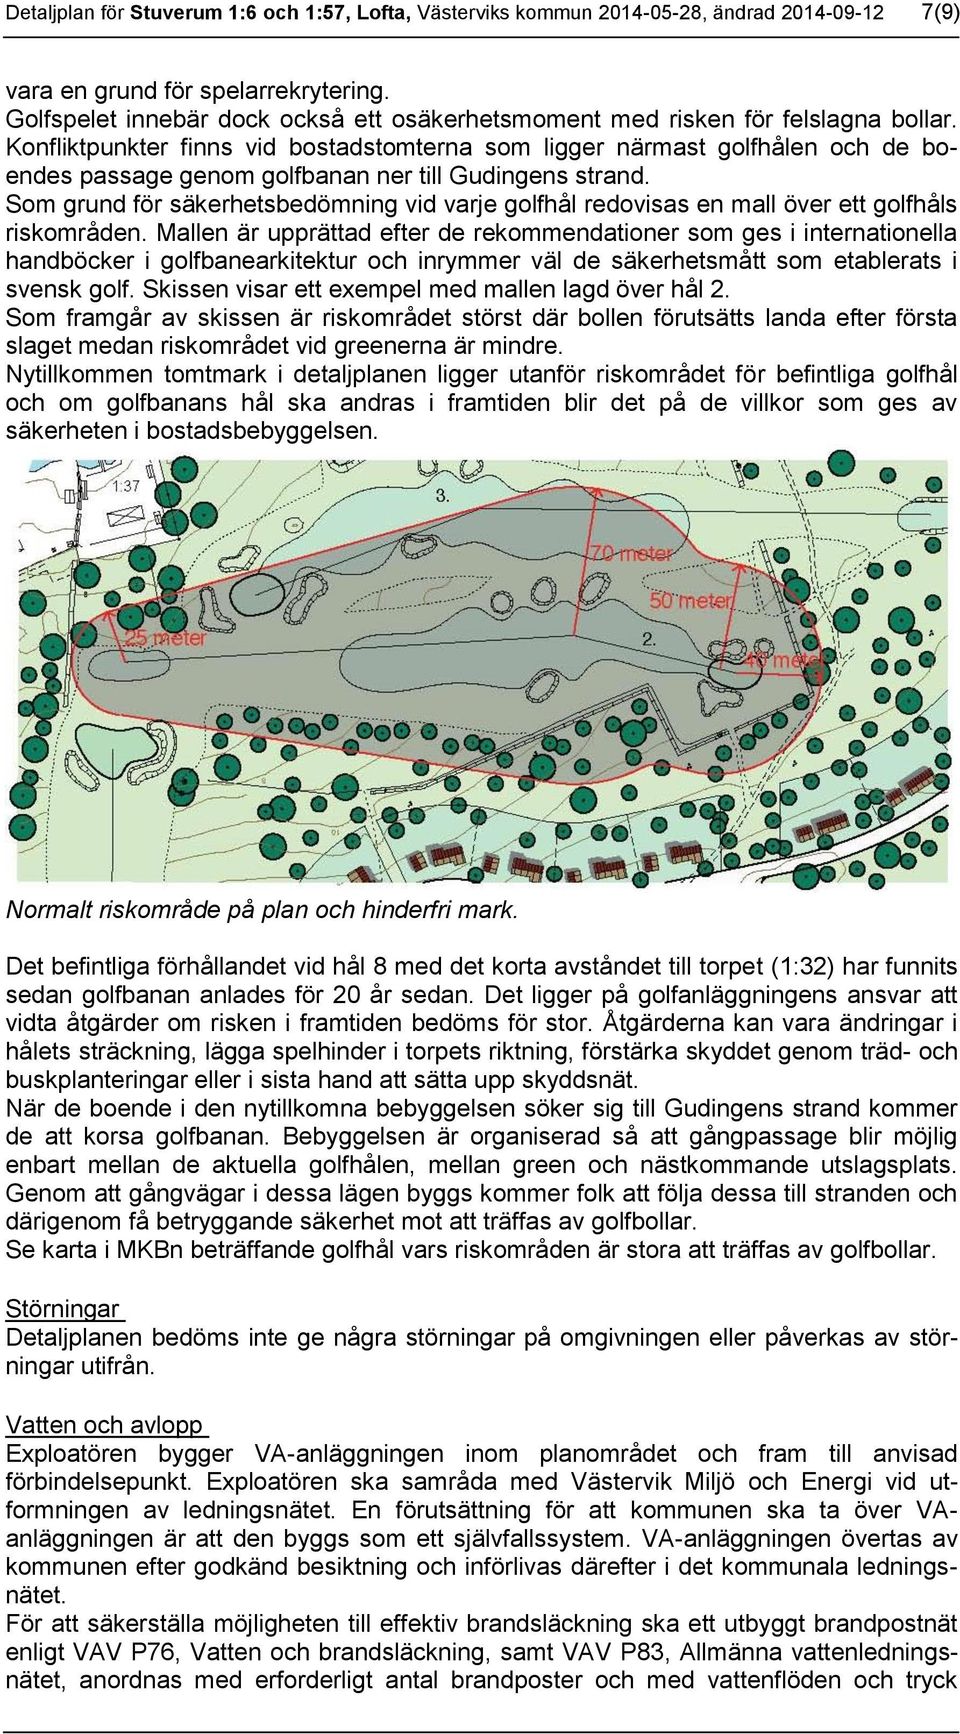 Konfliktpunkter finns vid bostadstomterna som ligger närmast golfhålen och de boendes passage genom golfbanan ner till Gudingens strand.